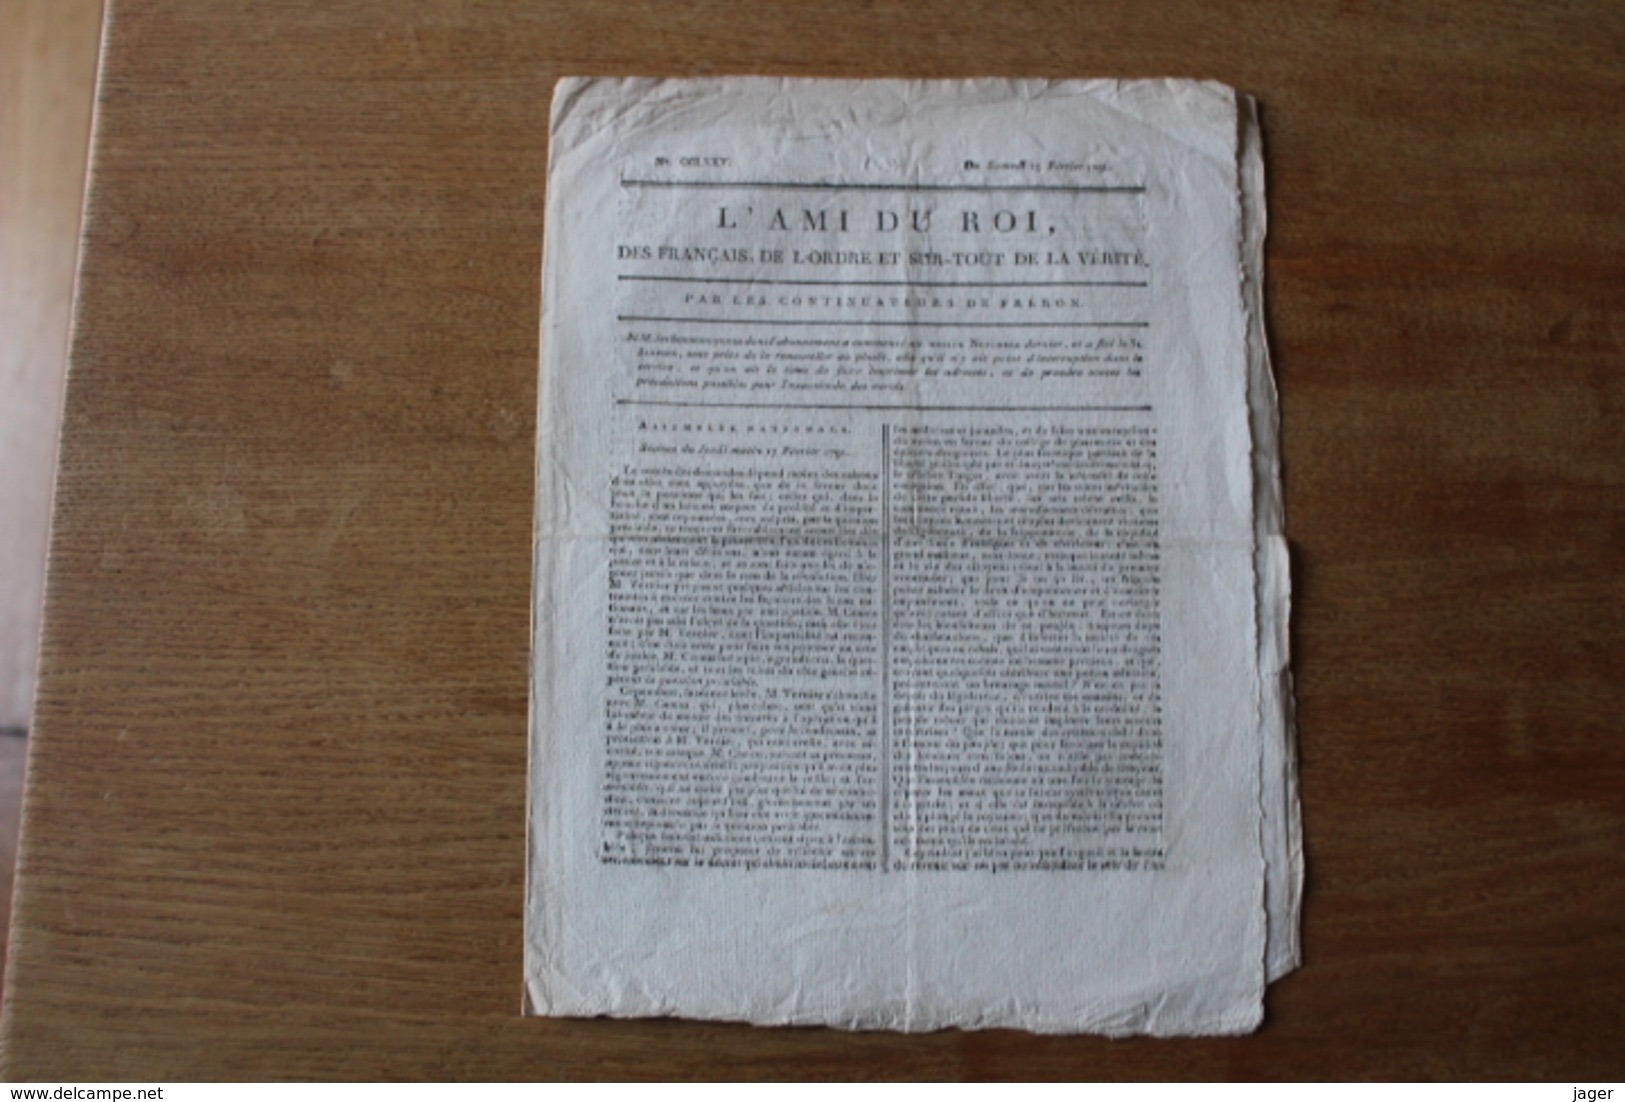 1791   L'Ami Du Roi  Des Français, De L'Ordre Et Sur Tout De La Vérité.  Journal - Historical Documents